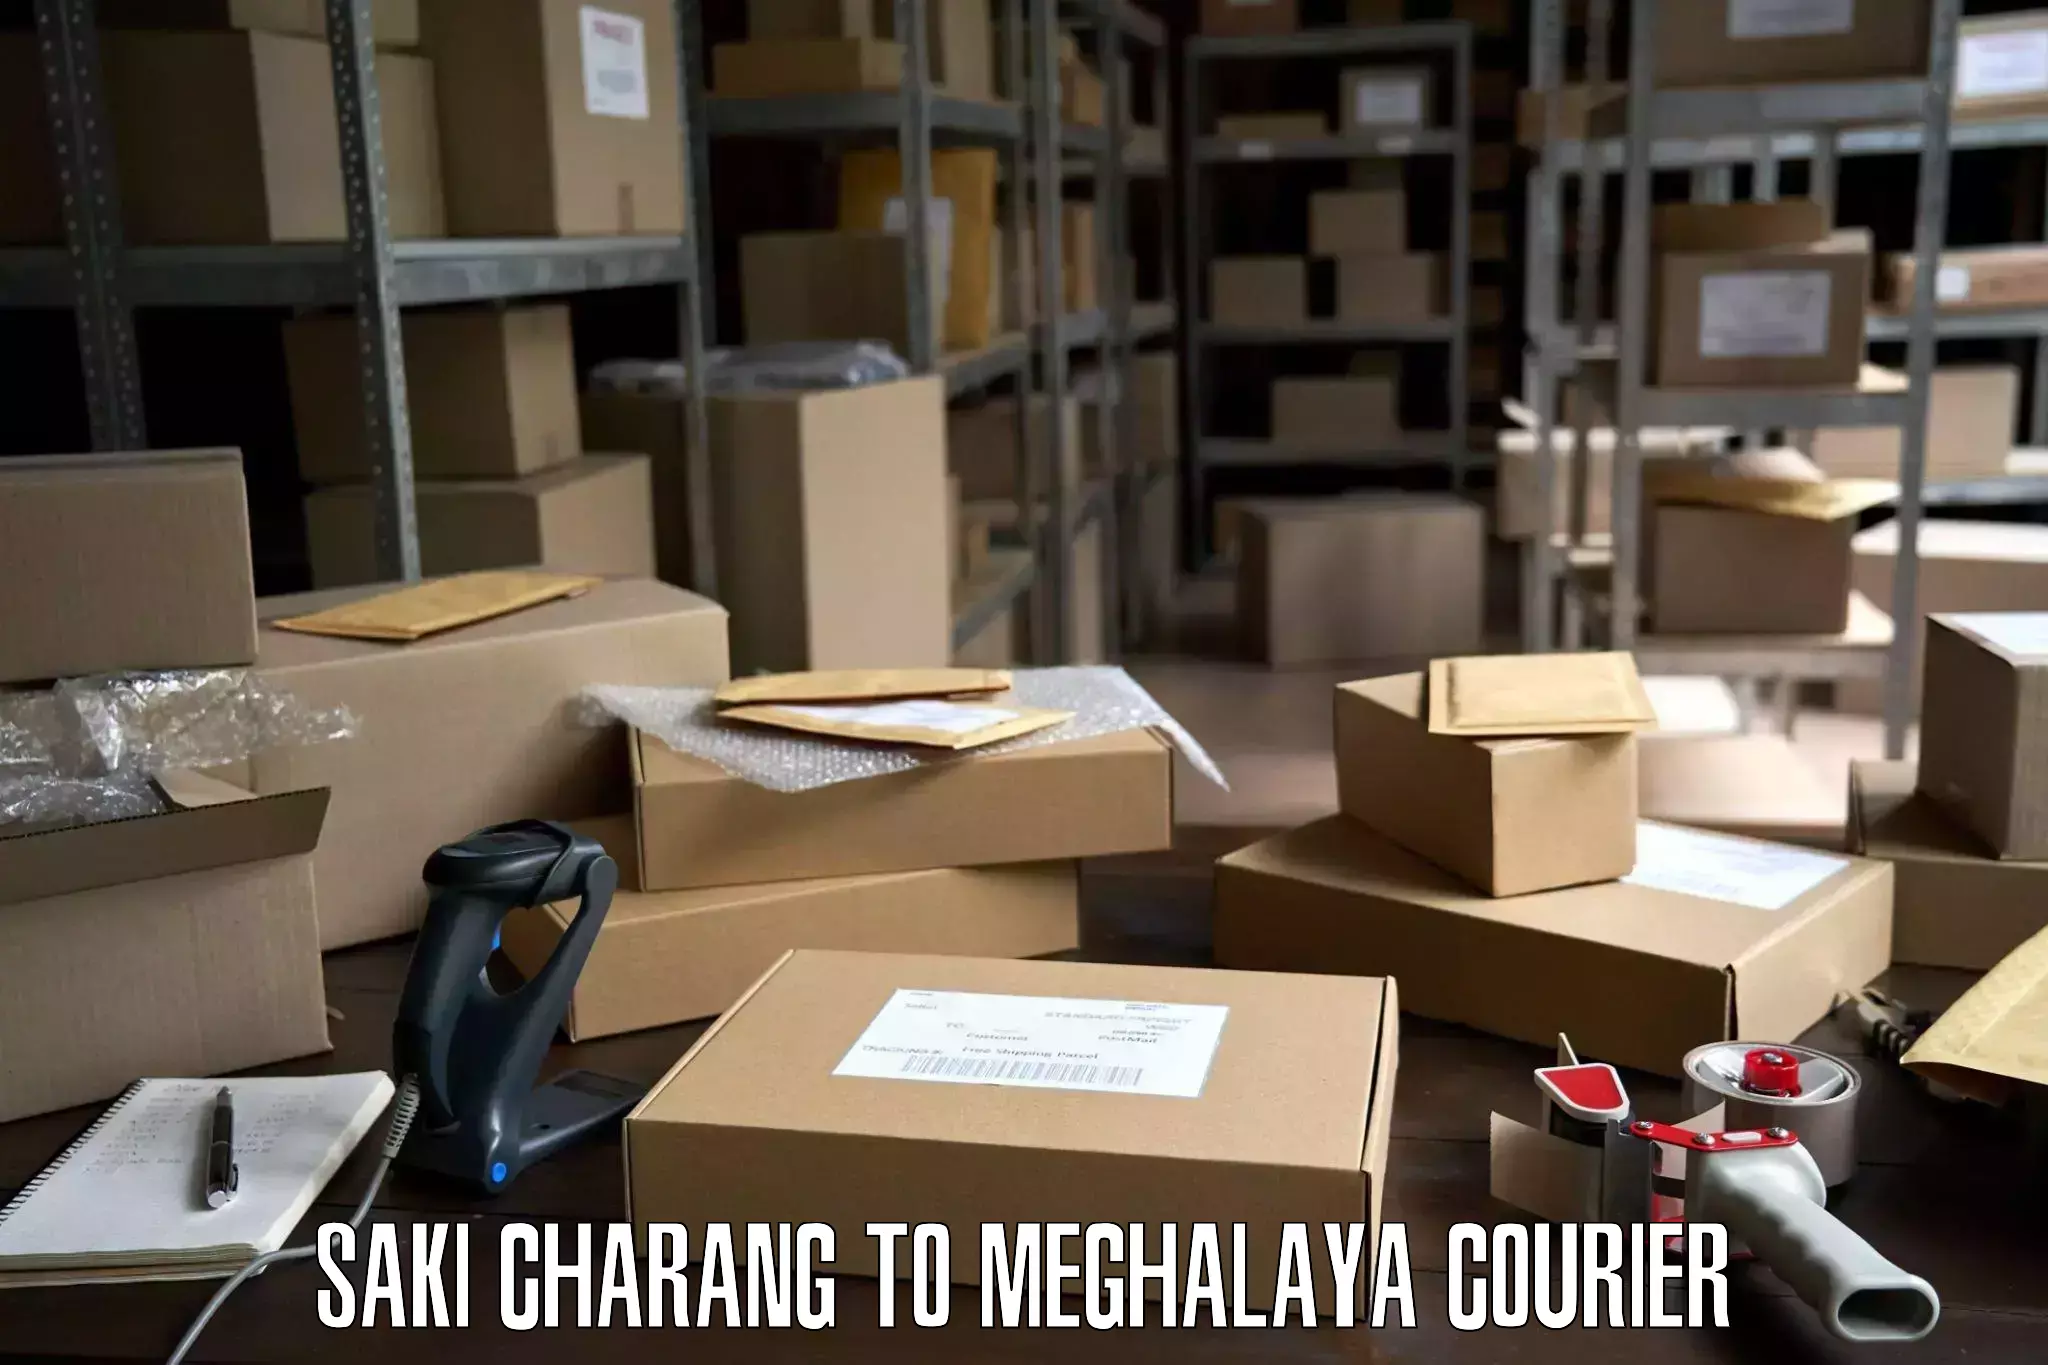 Quality moving company Saki Charang to Meghalaya